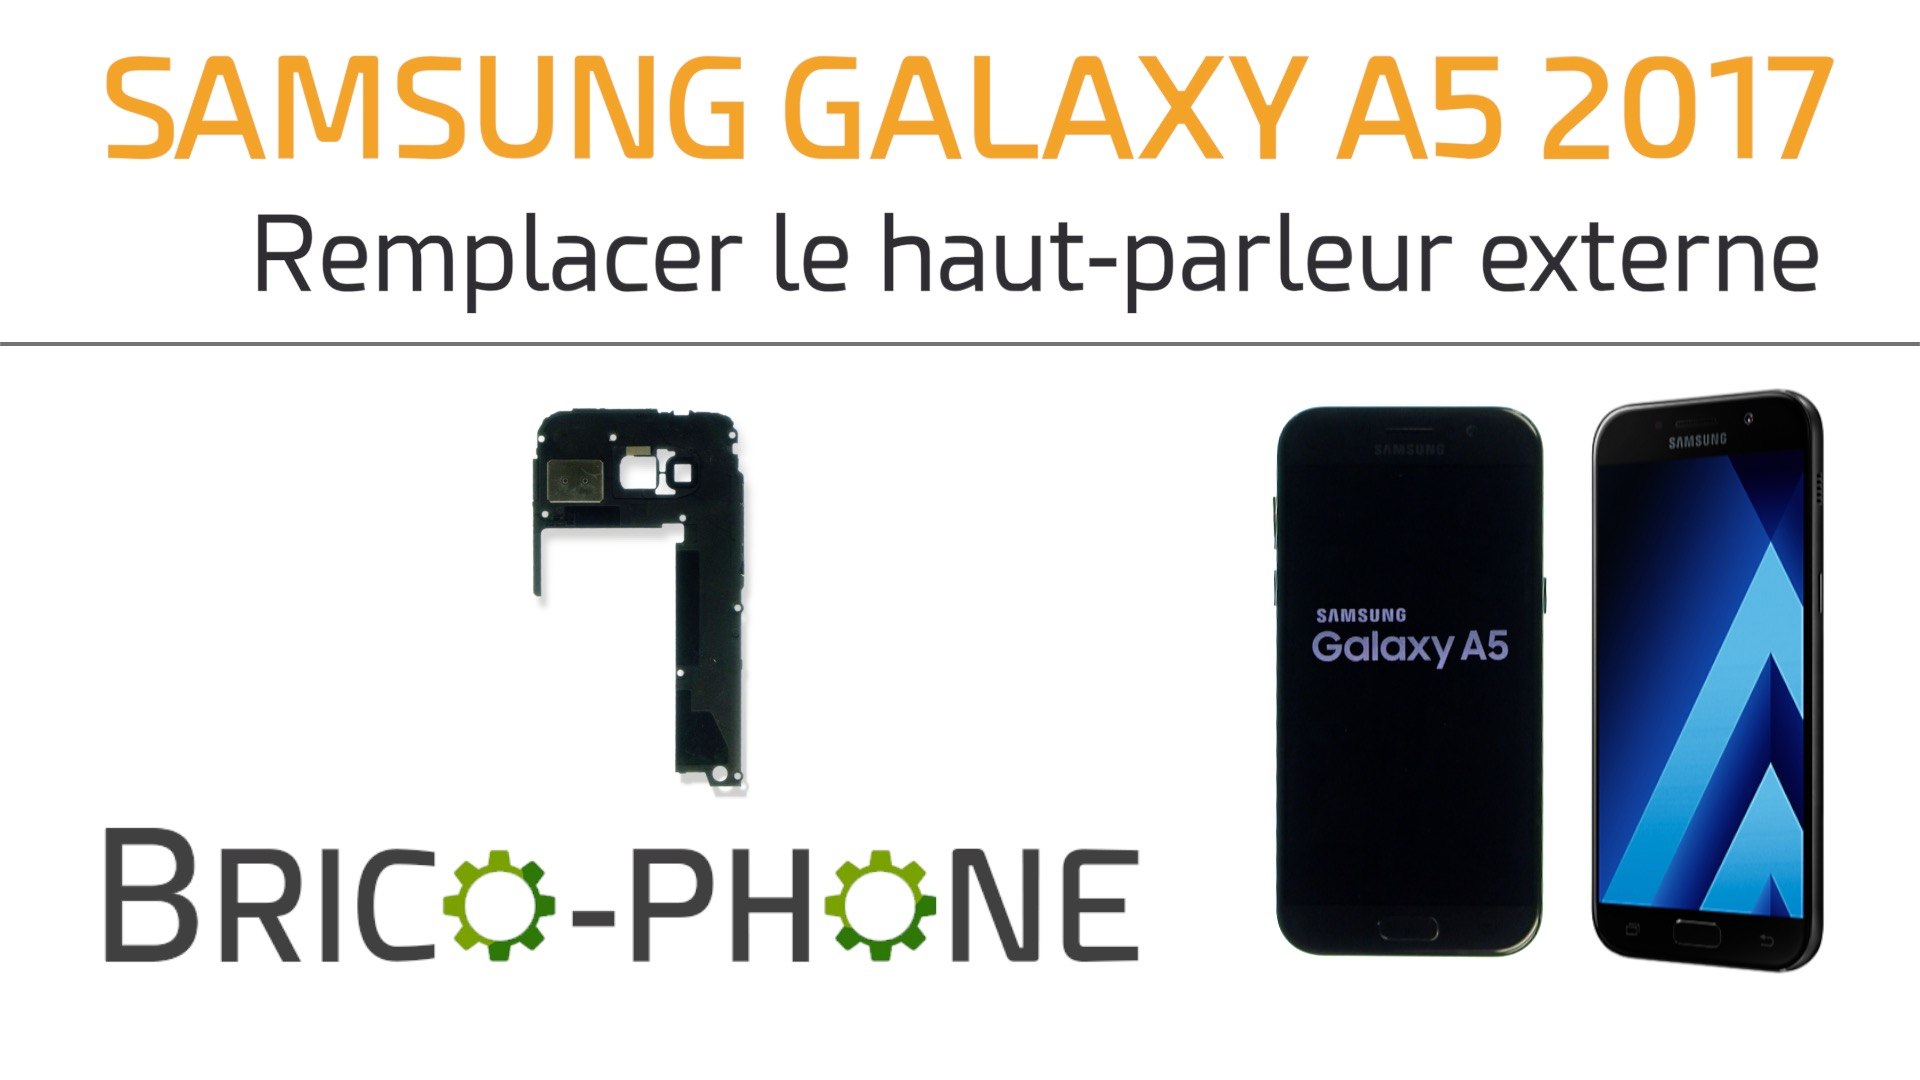 Samsung Galaxy A5 2017 : changer le haut-parleur externe - Vidéo Dailymotion